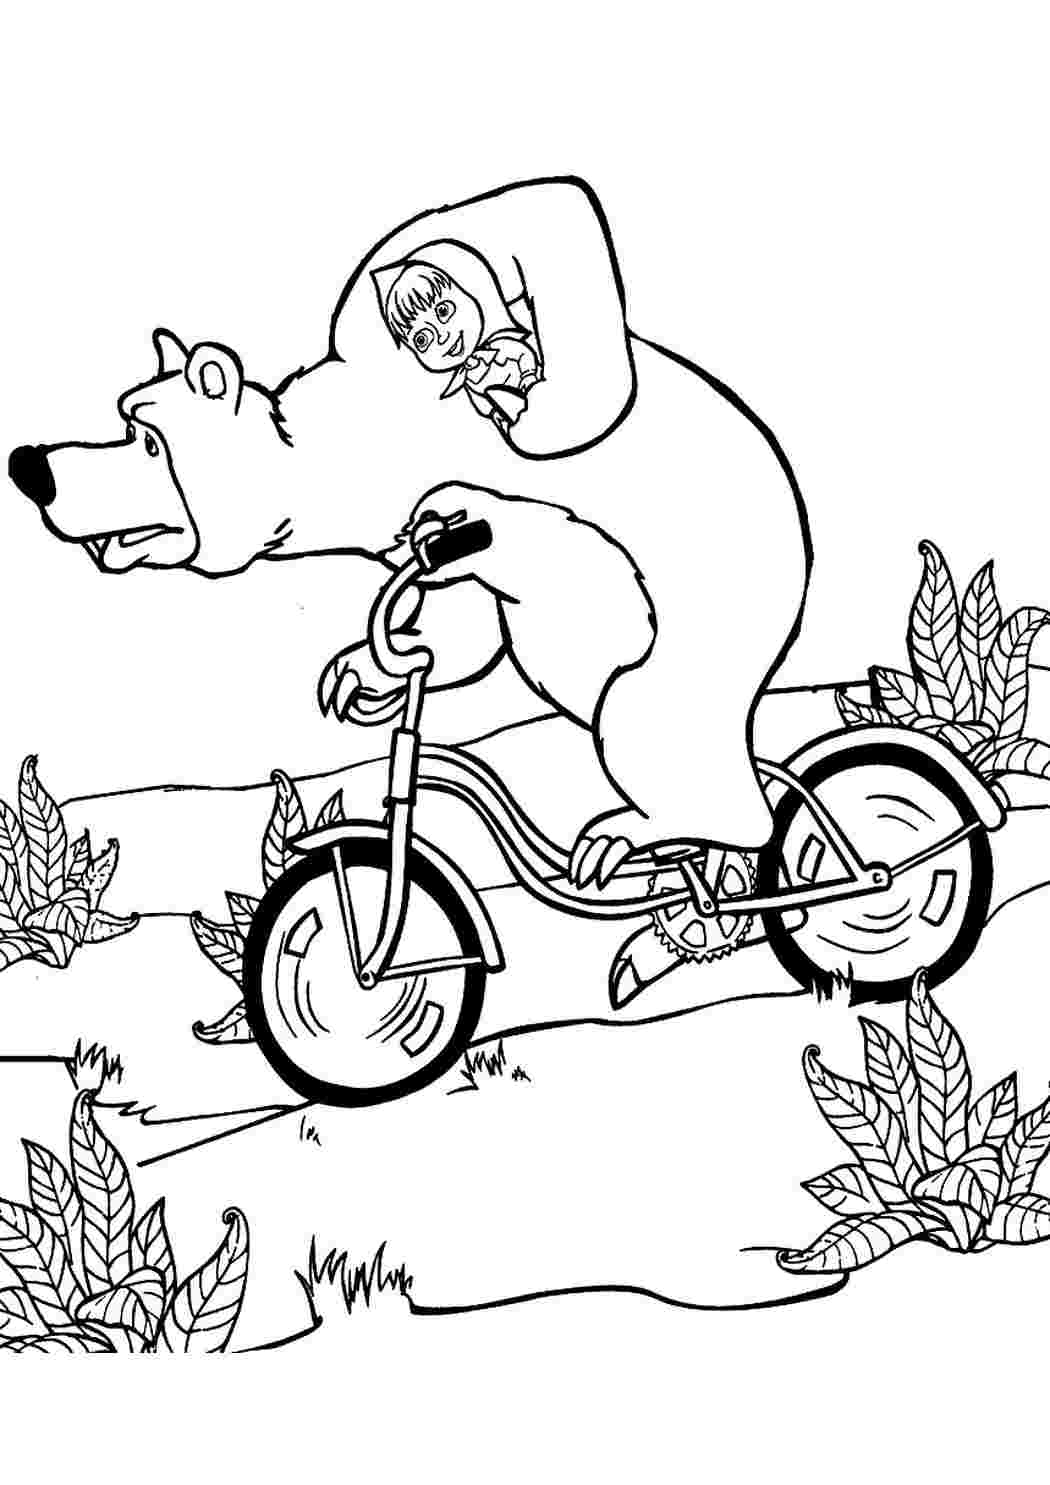 Раскраски из мультфильма Маша и Медведь скачать